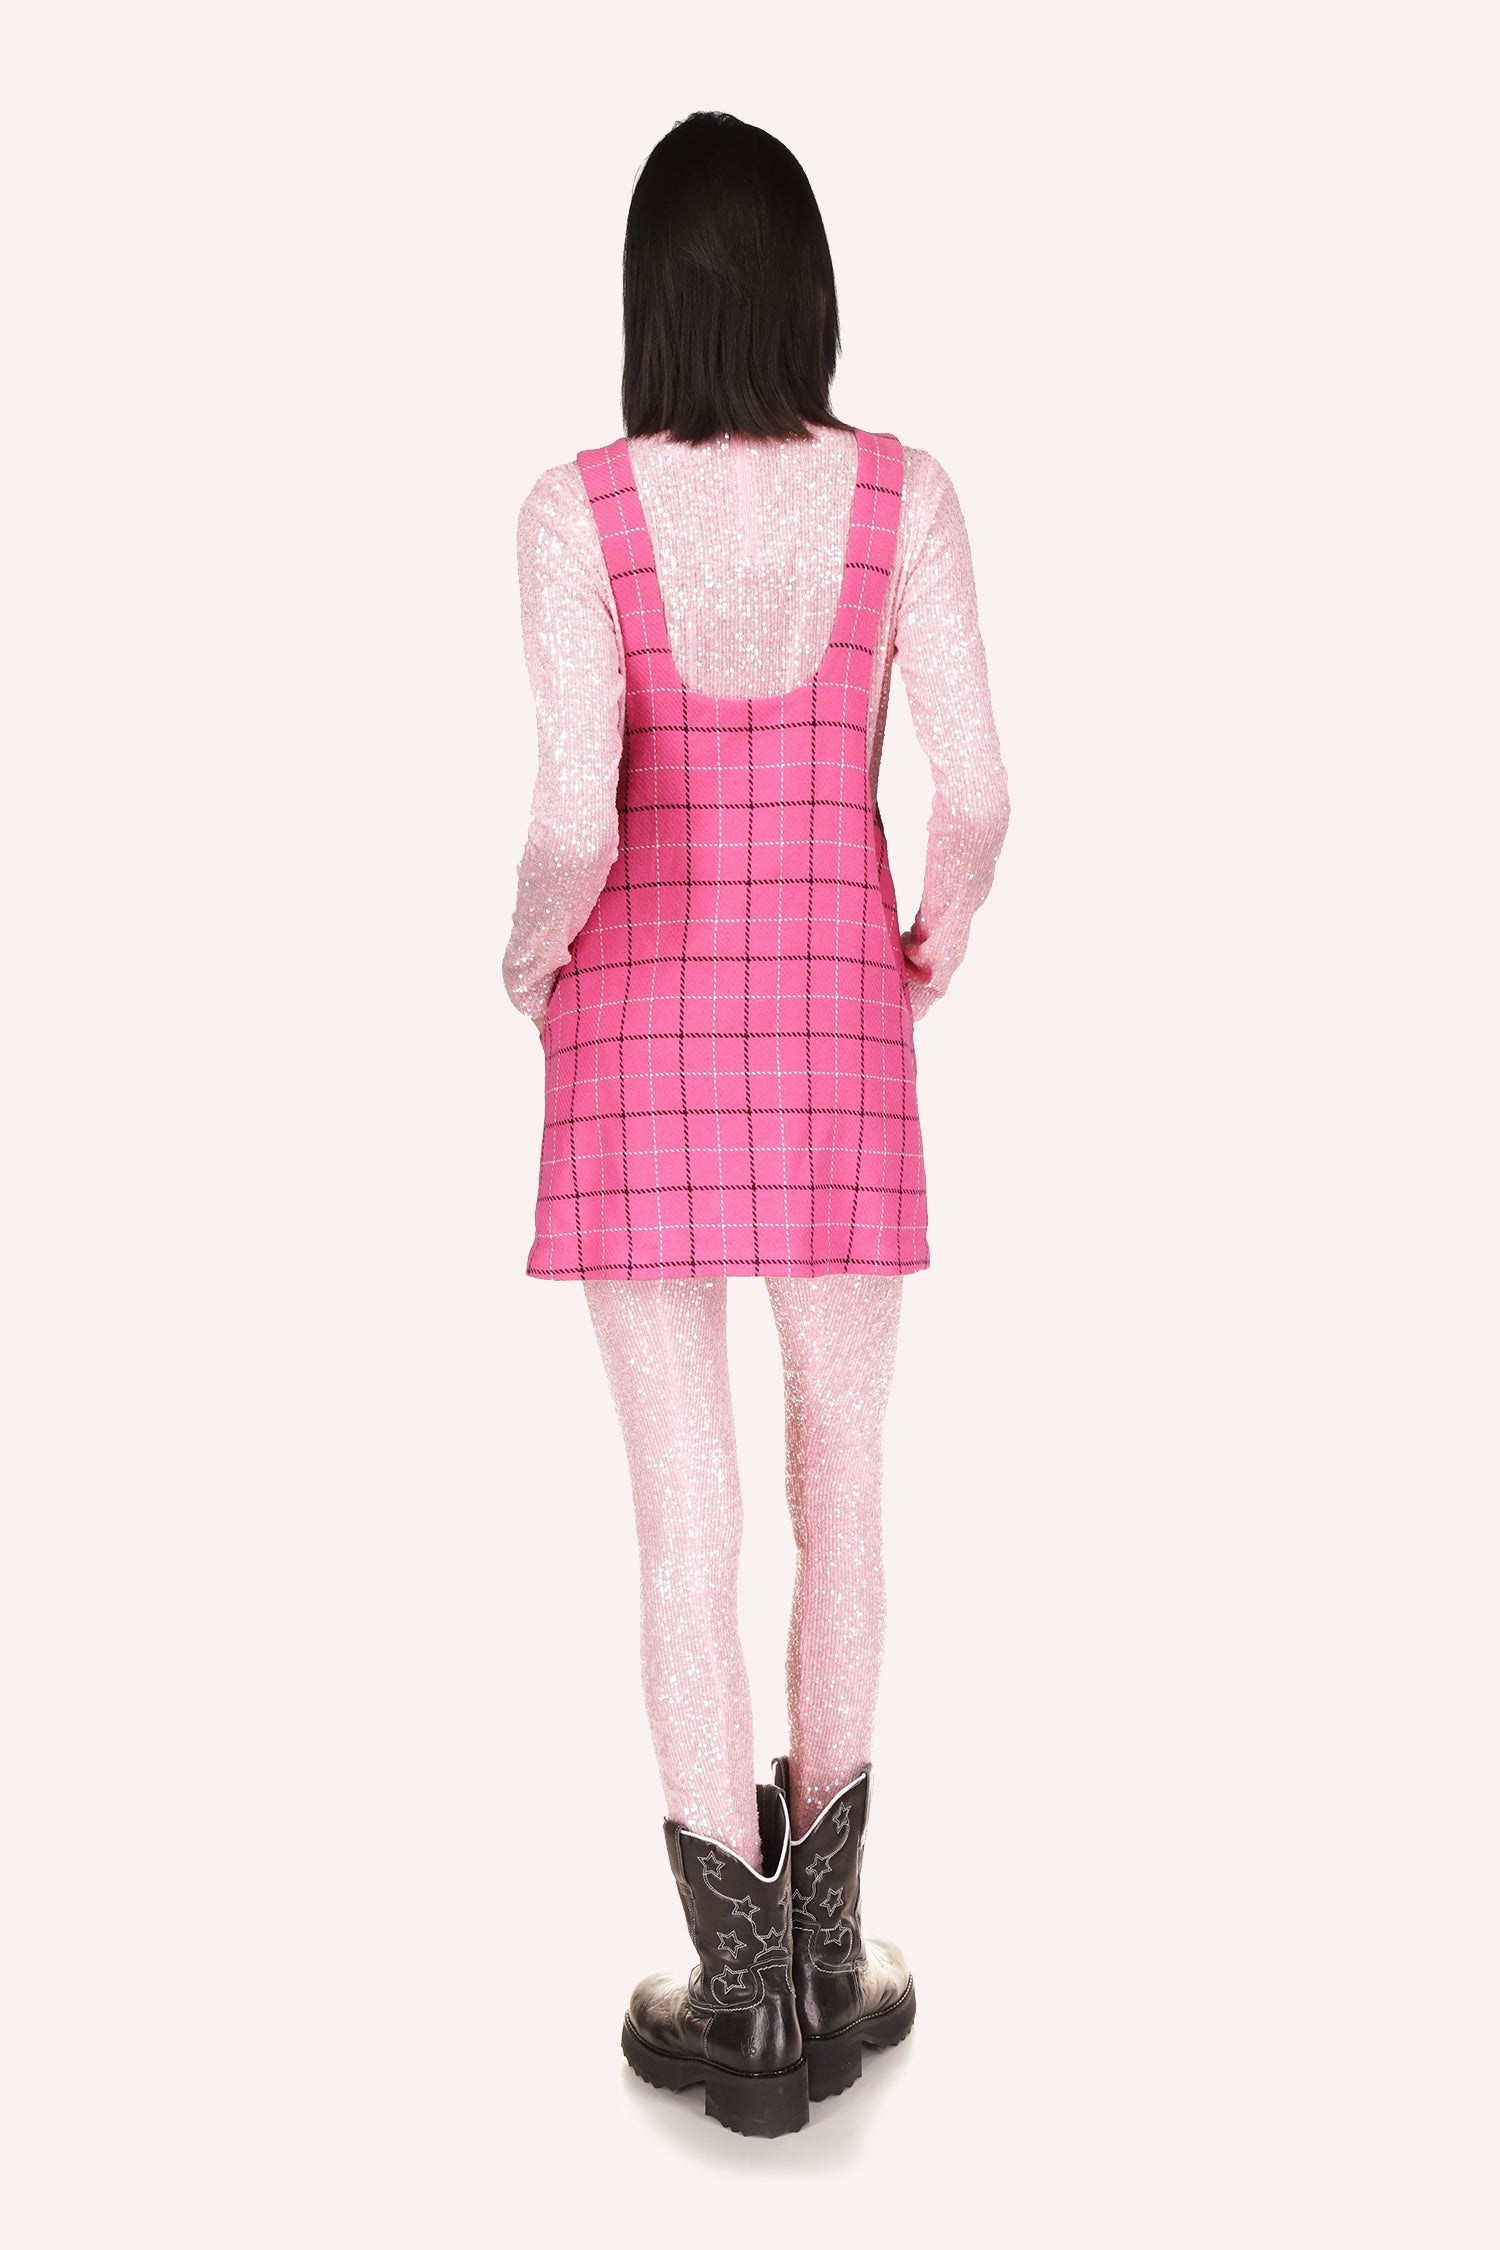 The girl looks stylish in Anna Sui's Windowpane Jumper Bubblegum Multi pink mini dress